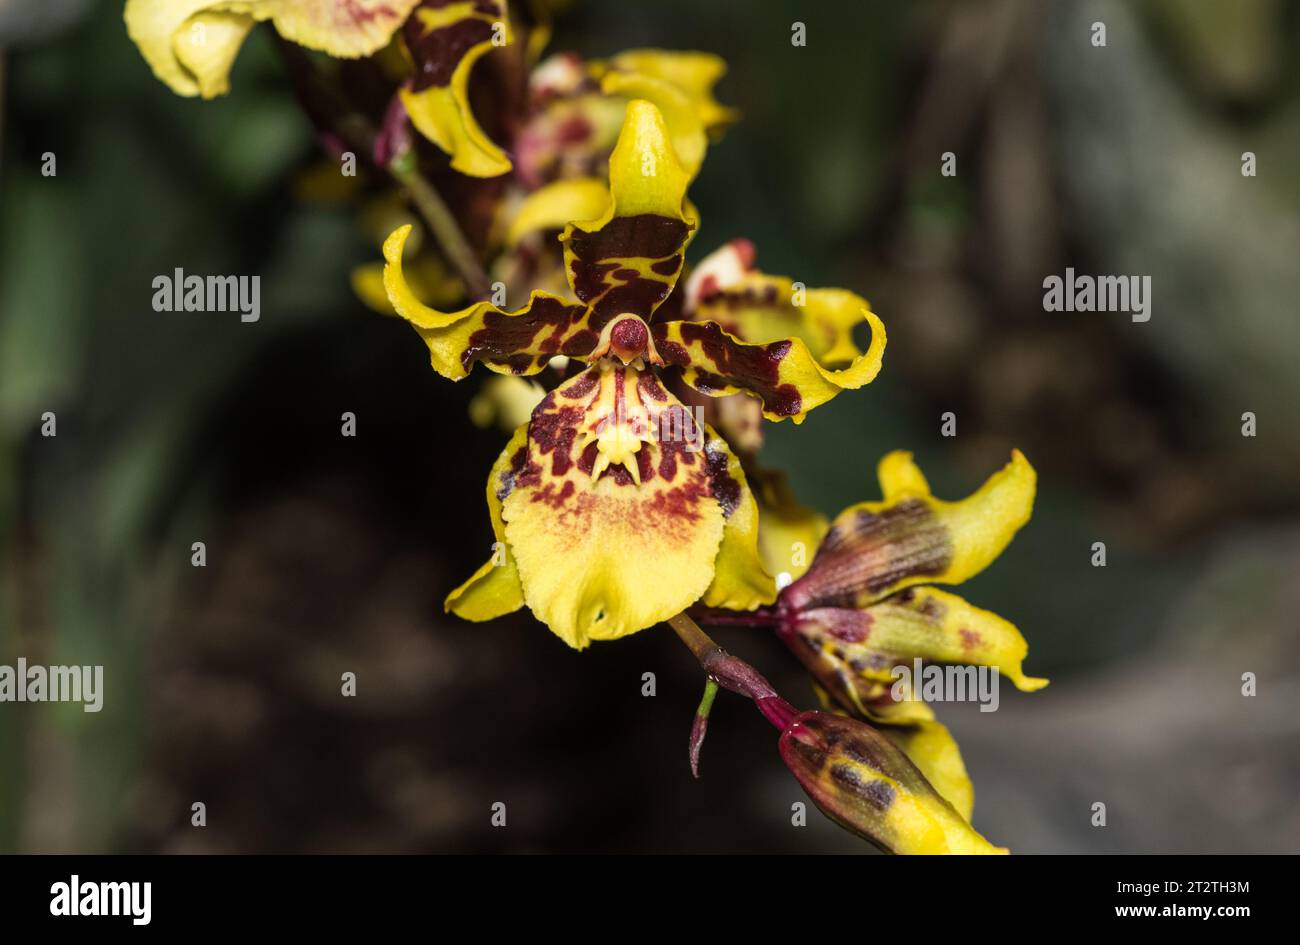 A cultivated orchid Odontioda sp, in Quito Botanical Gardens, Ecuador Stock Photo